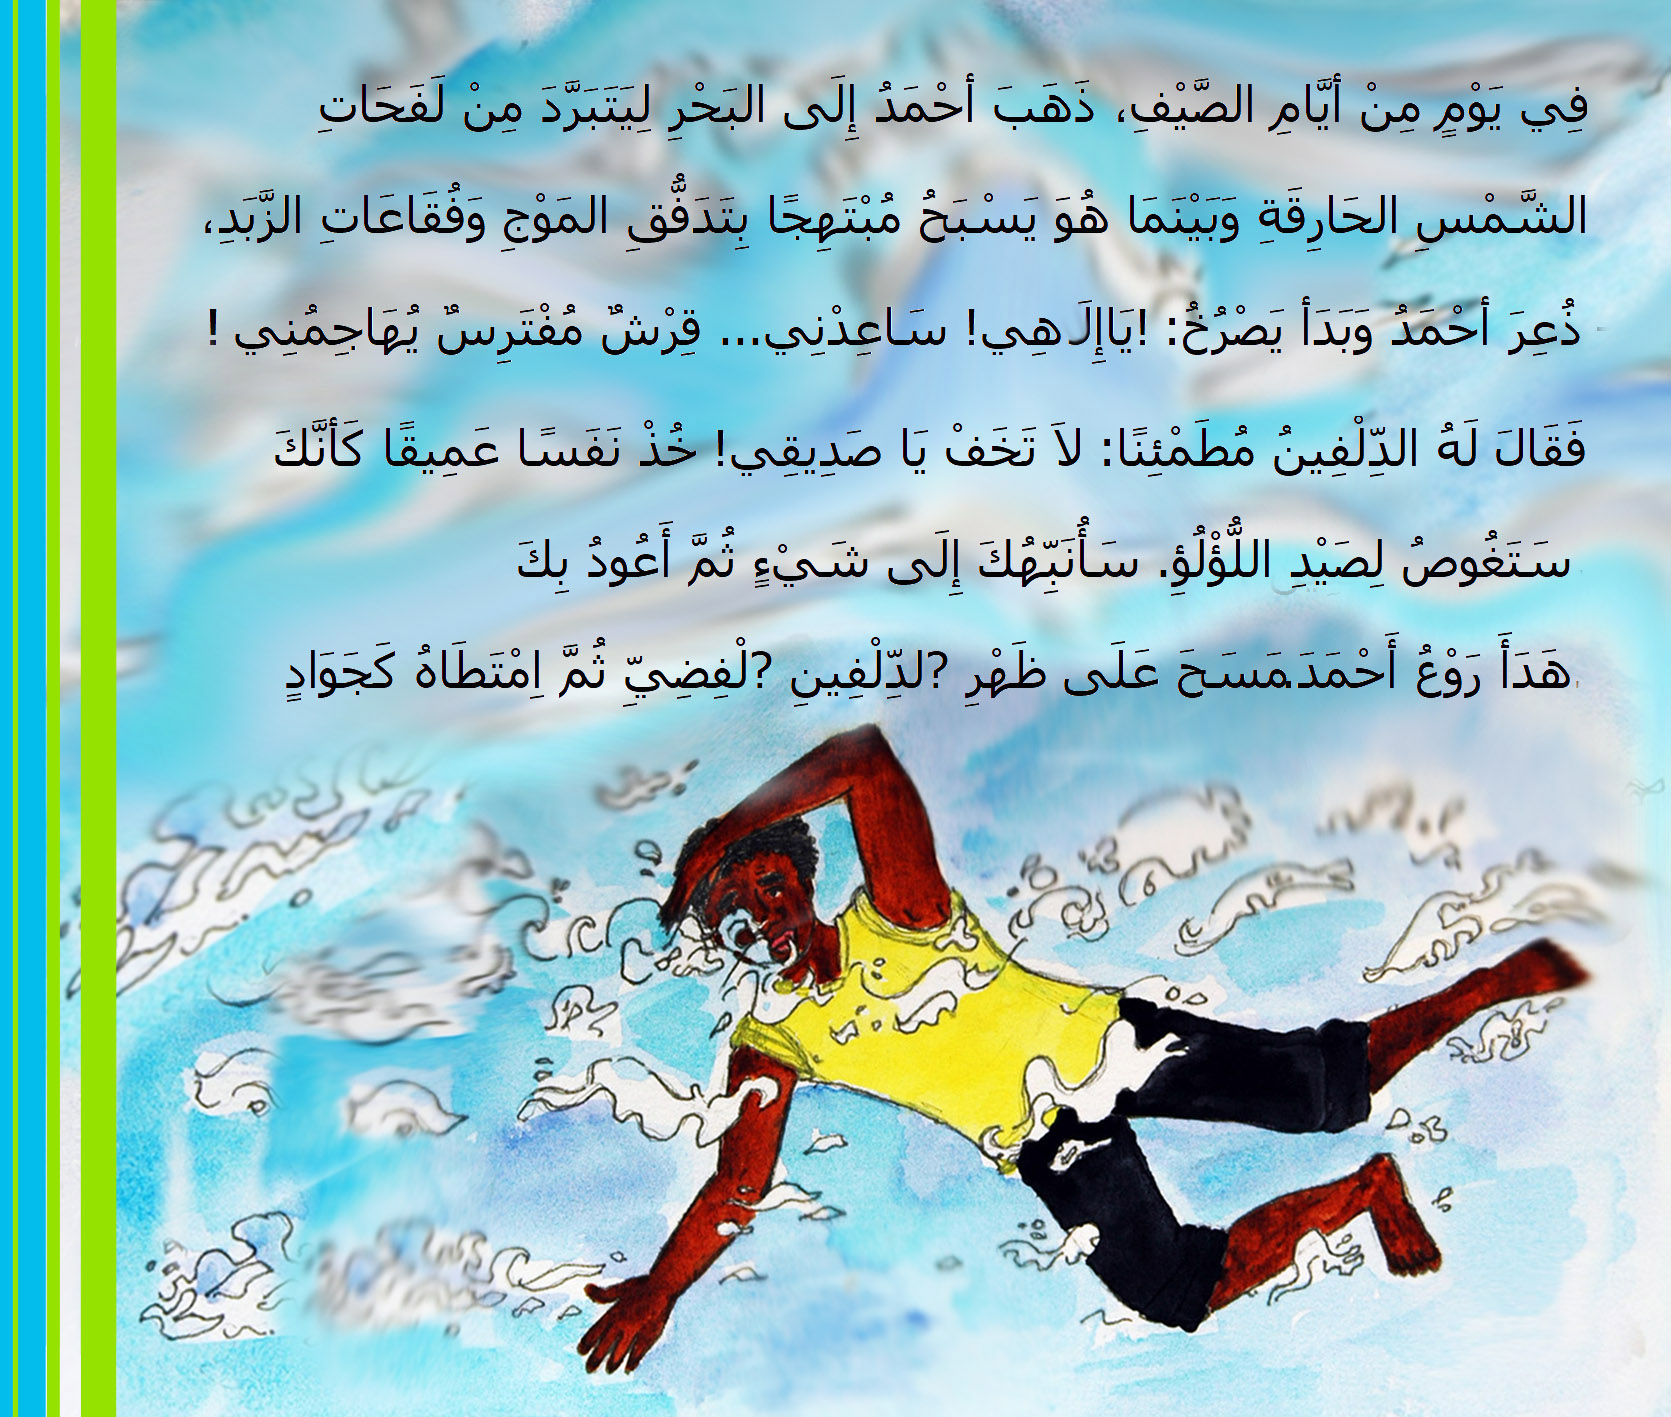 من قصص الأطفال المصورة - حكاية: في أعماق البحار - من المجموعة القصصية: سلسلة زهرة الثالوث - كتابة ورسوم وتصميم: كريمة الغربي - موقع (كيدزوون | Kidzooon)